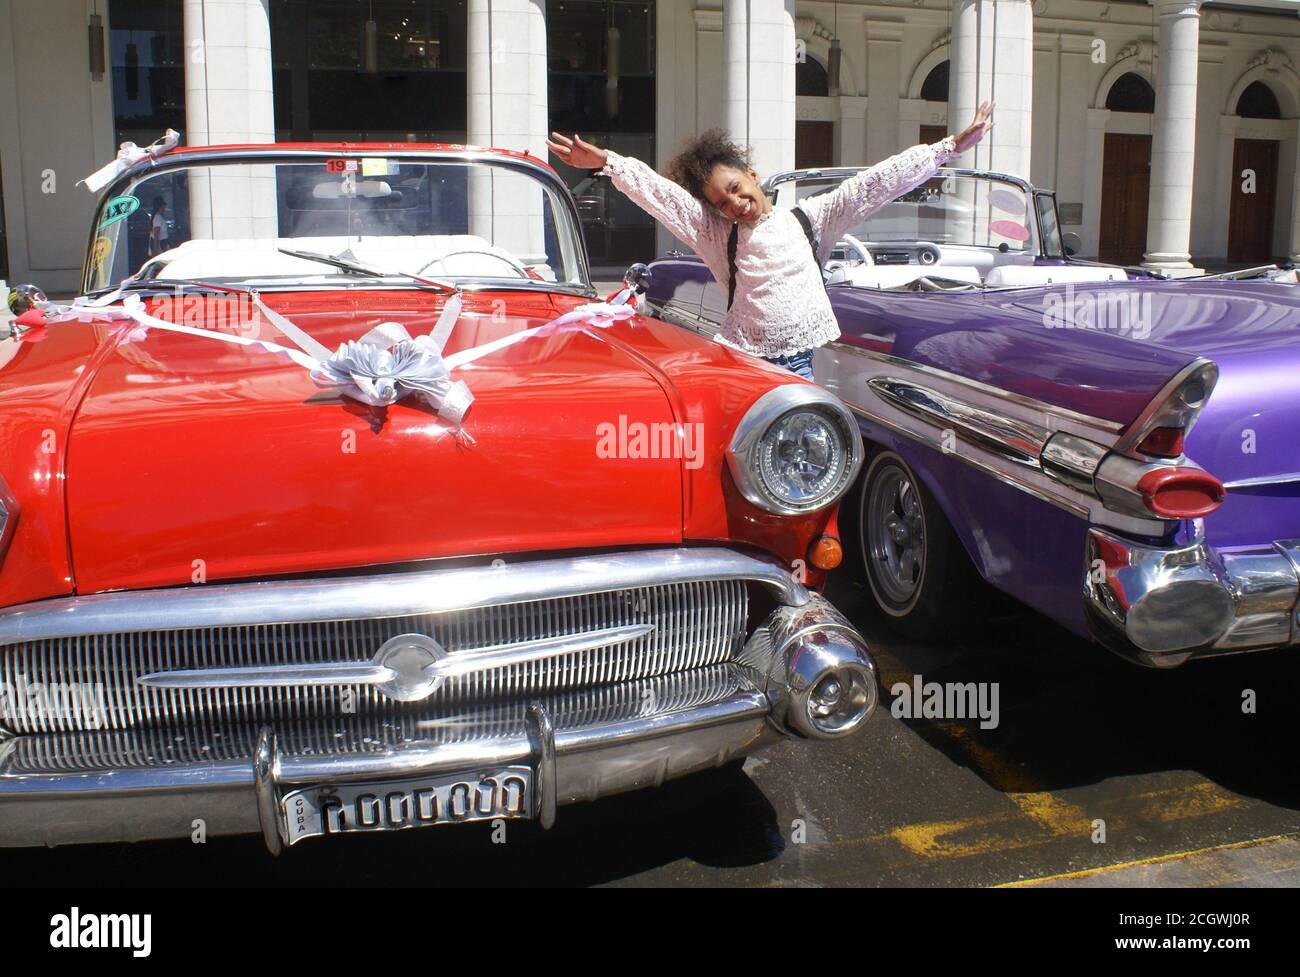 Kuba, La Havana-29/03/2019. Kleines Mädchen kreolisch lächelnd glücklich zwischen zwei clasic Auto in der Stadt Straße .to redaktionelle Verwendung. Keine Modellfreigabe Stockfoto